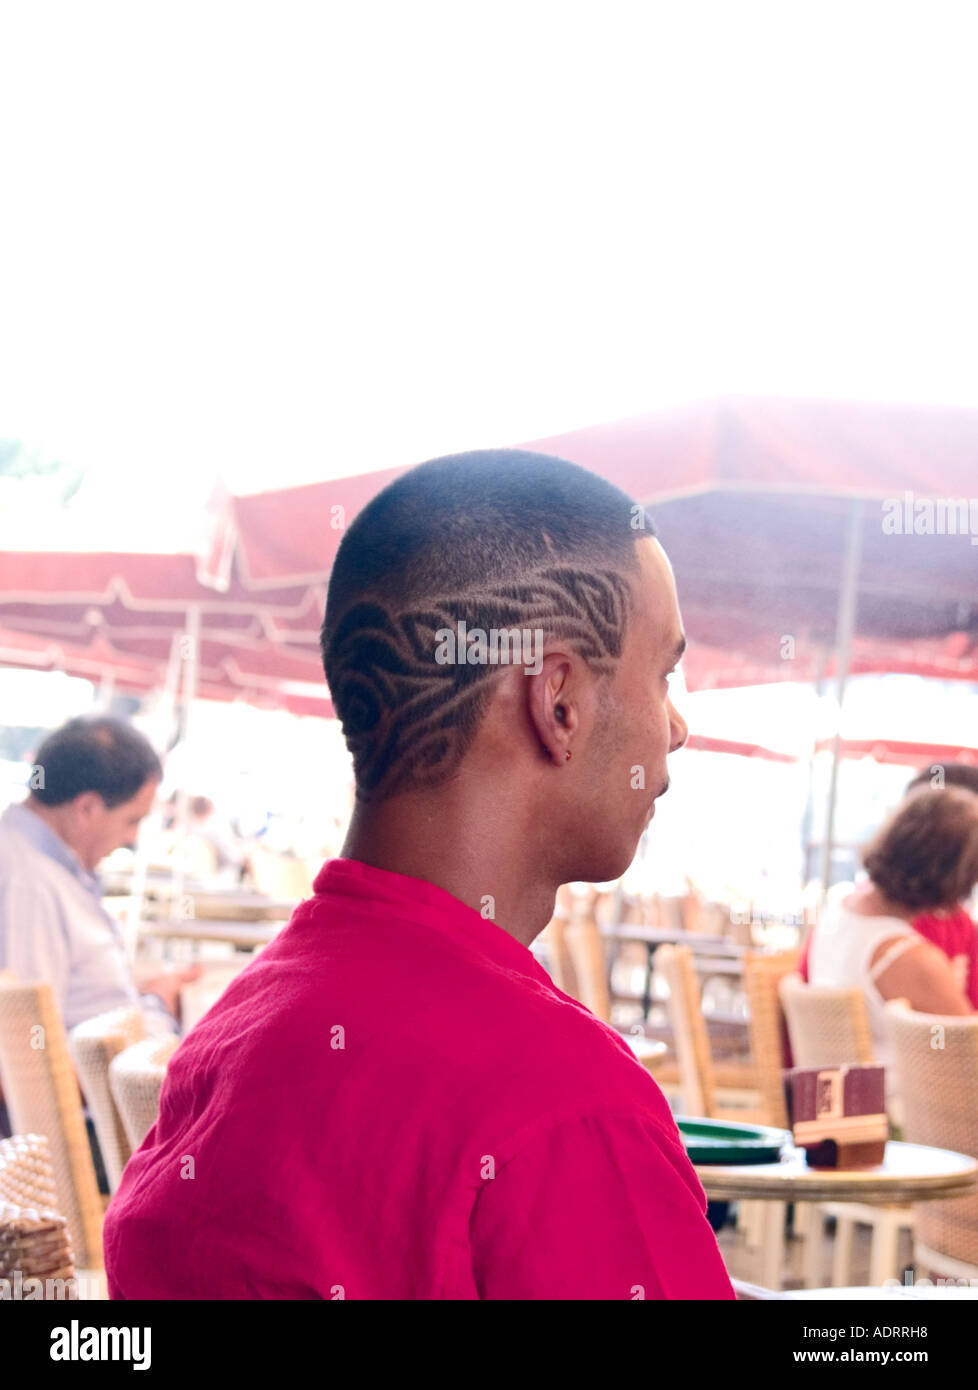 Eine Ruckansicht Ein Franzosischer Mann In Einem Cafe Mit Einem Flammen Muster In Seine Haare Rasiert Stockfotografie Alamy